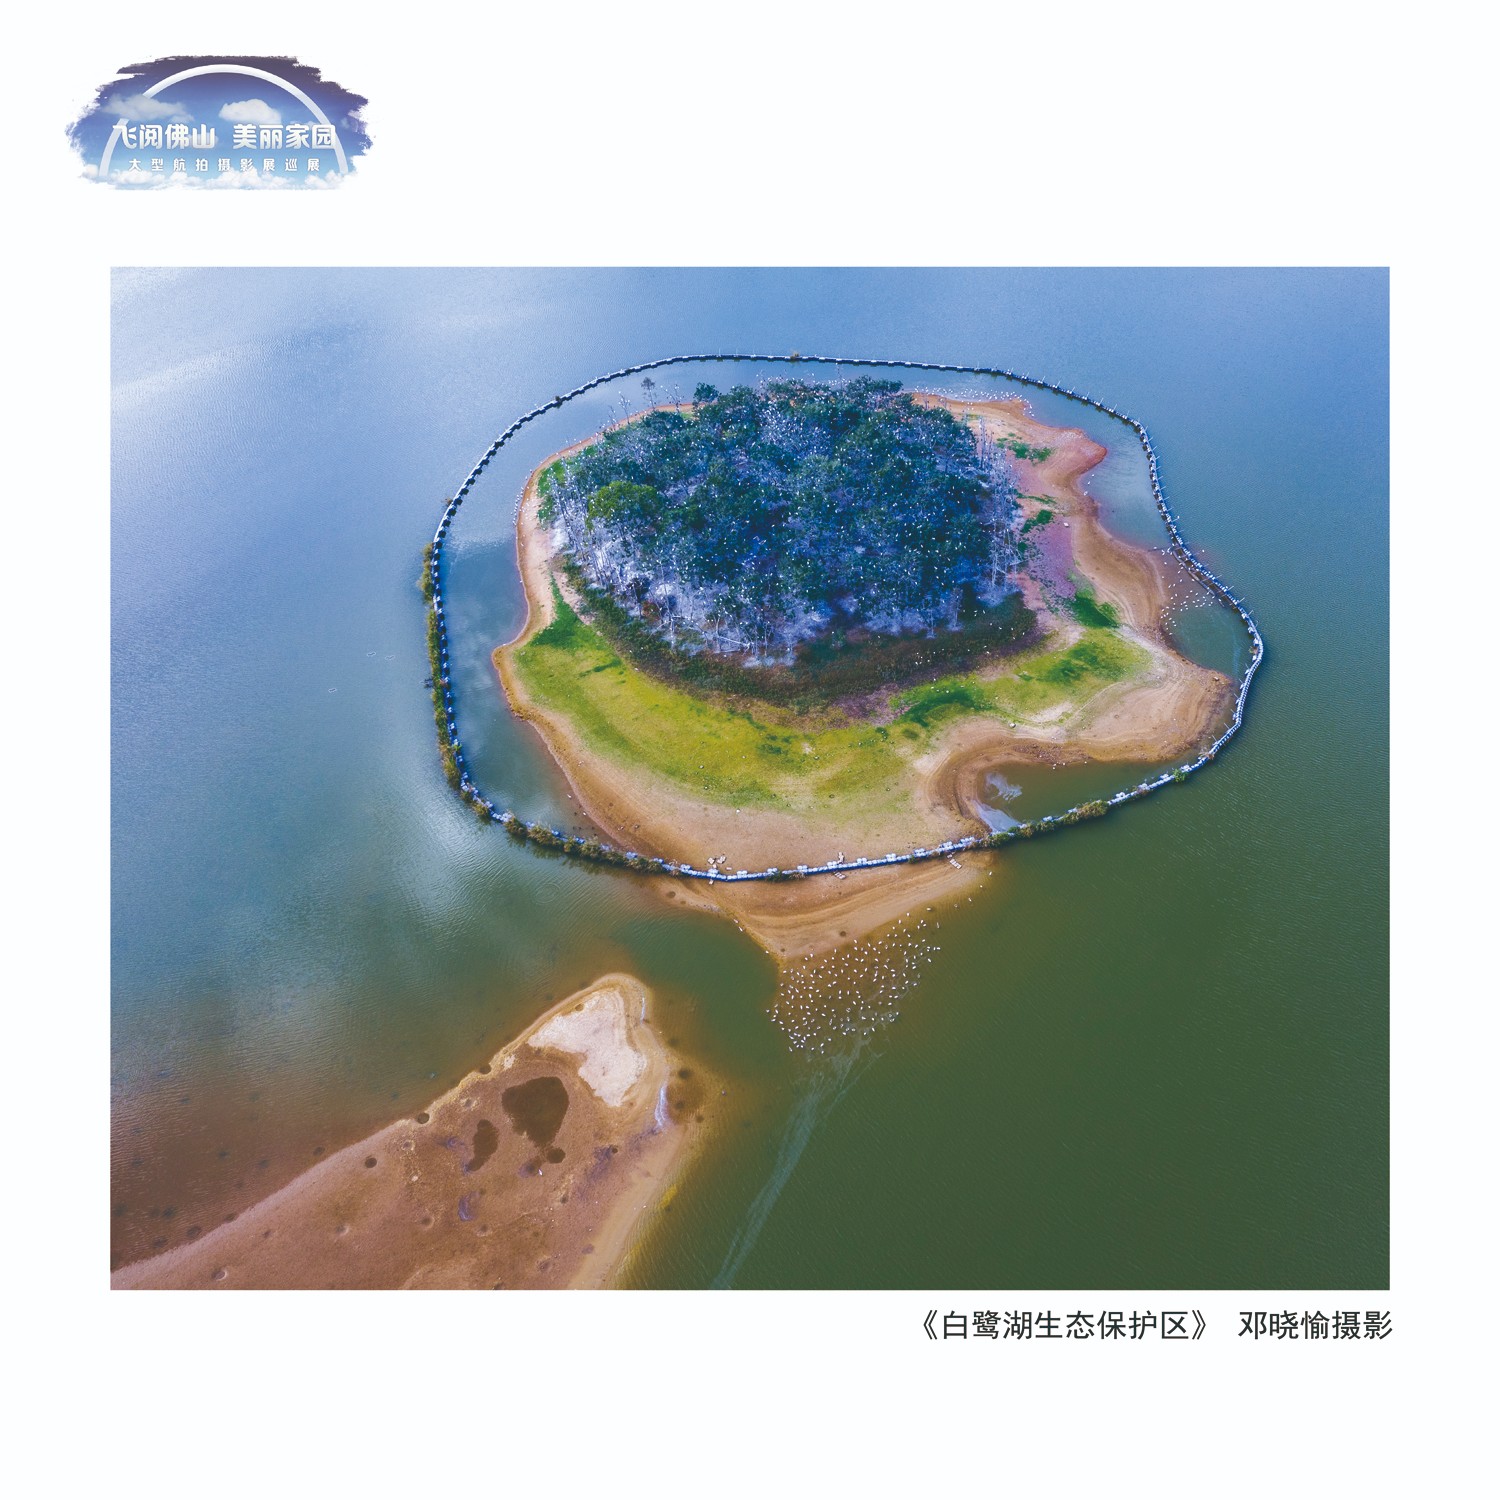 邓晓愉  白鹭湖生态保护区